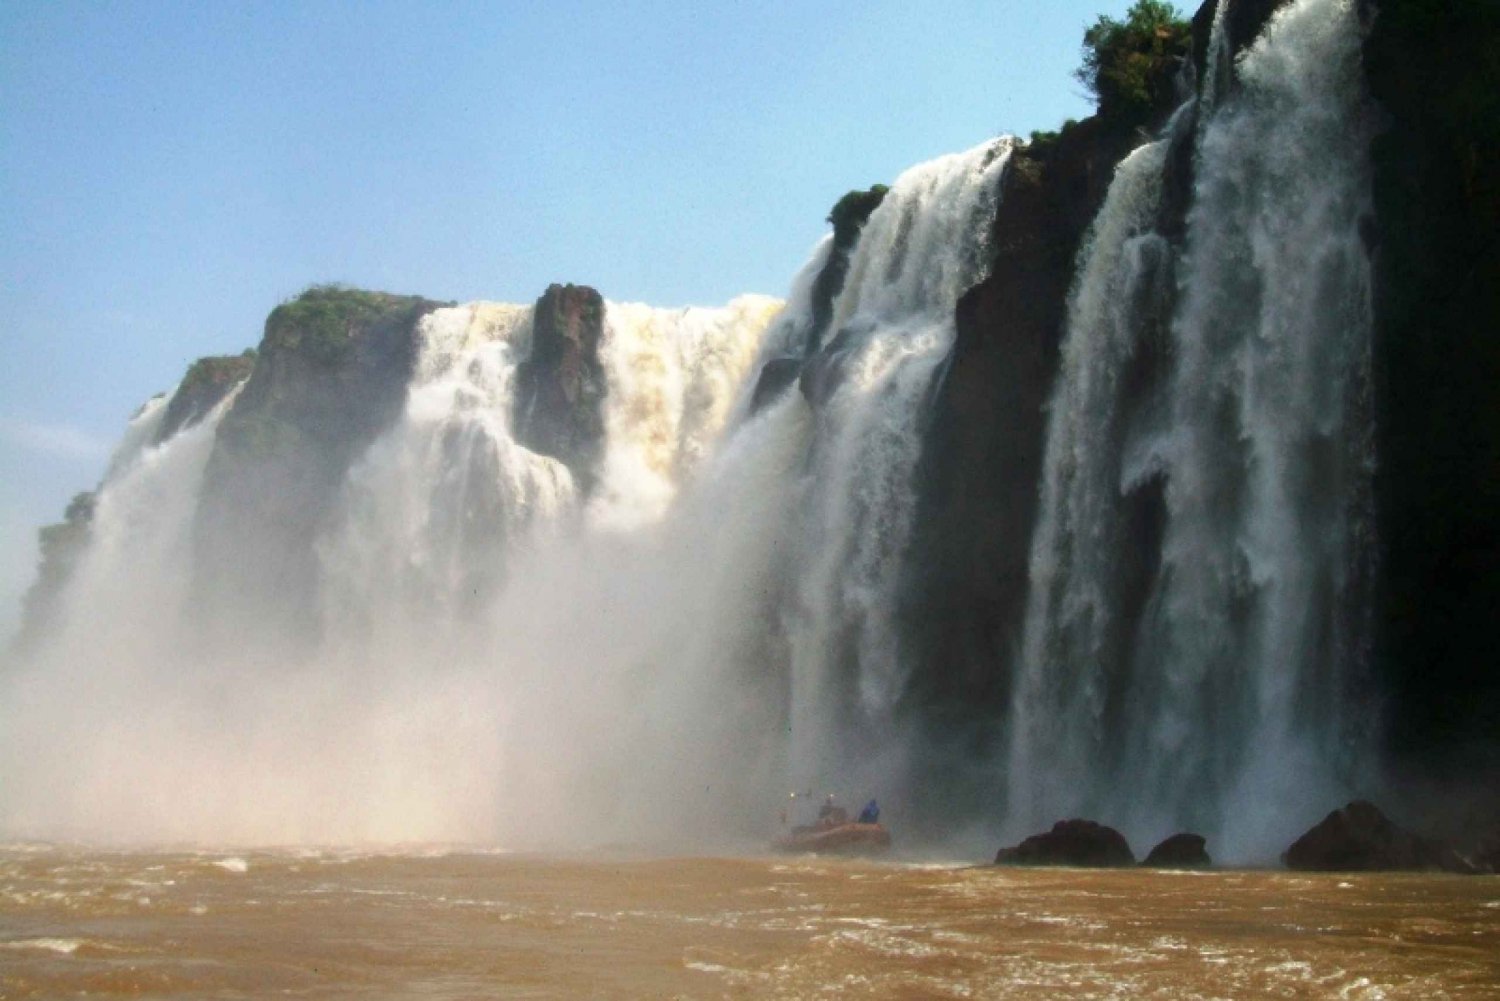 Puerto Iguazú : Excursion aux chutes d'Iguazu avec tour en jeep et tour en bateau